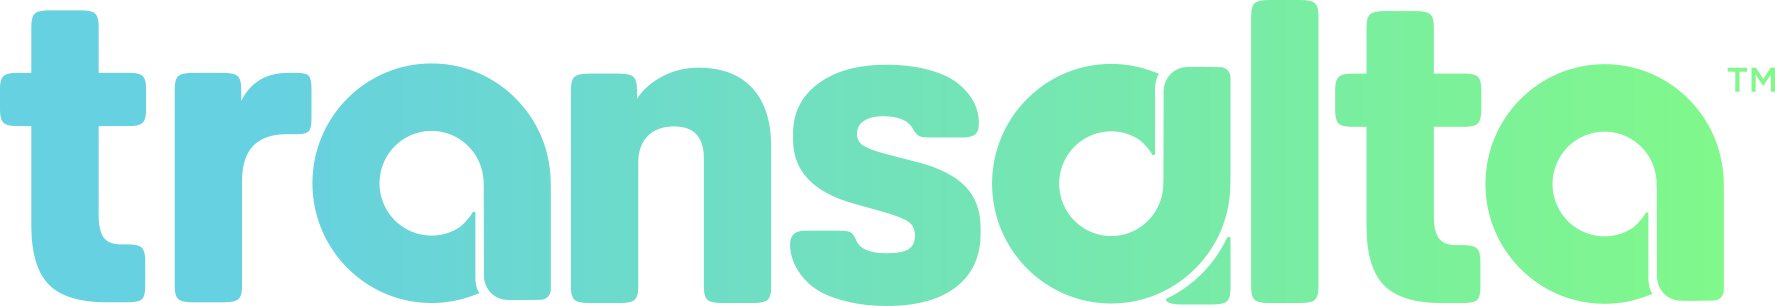 transalta-logo